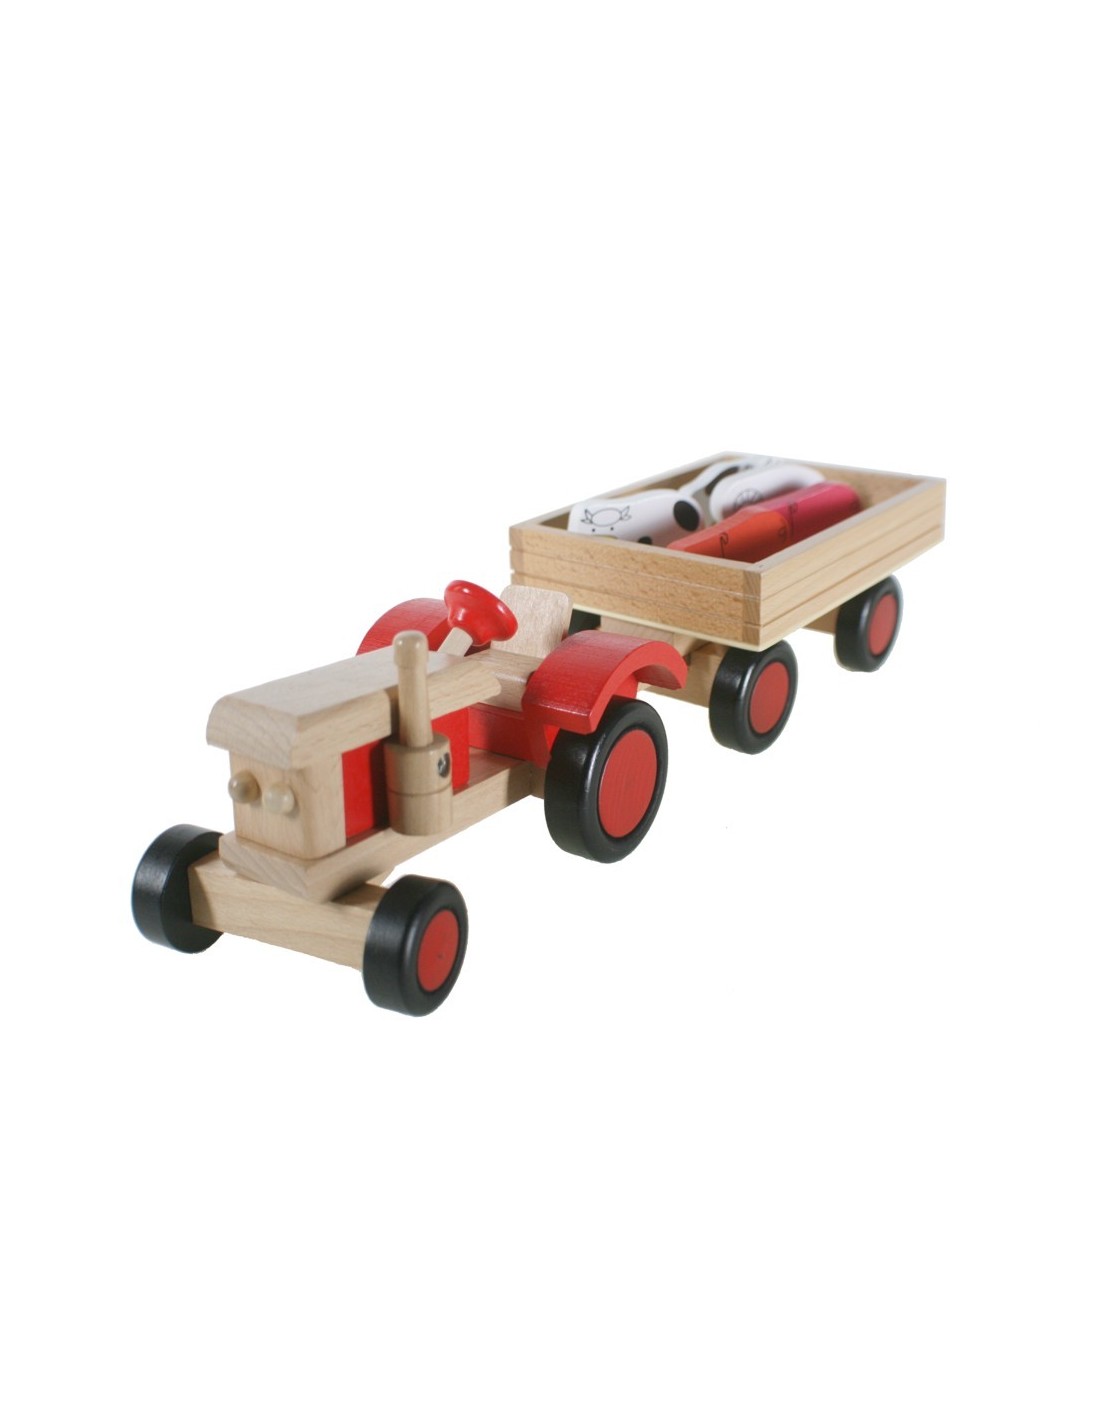 Tractor de fusta amb remolc i animals. Mesures: 10x40x13 cm.